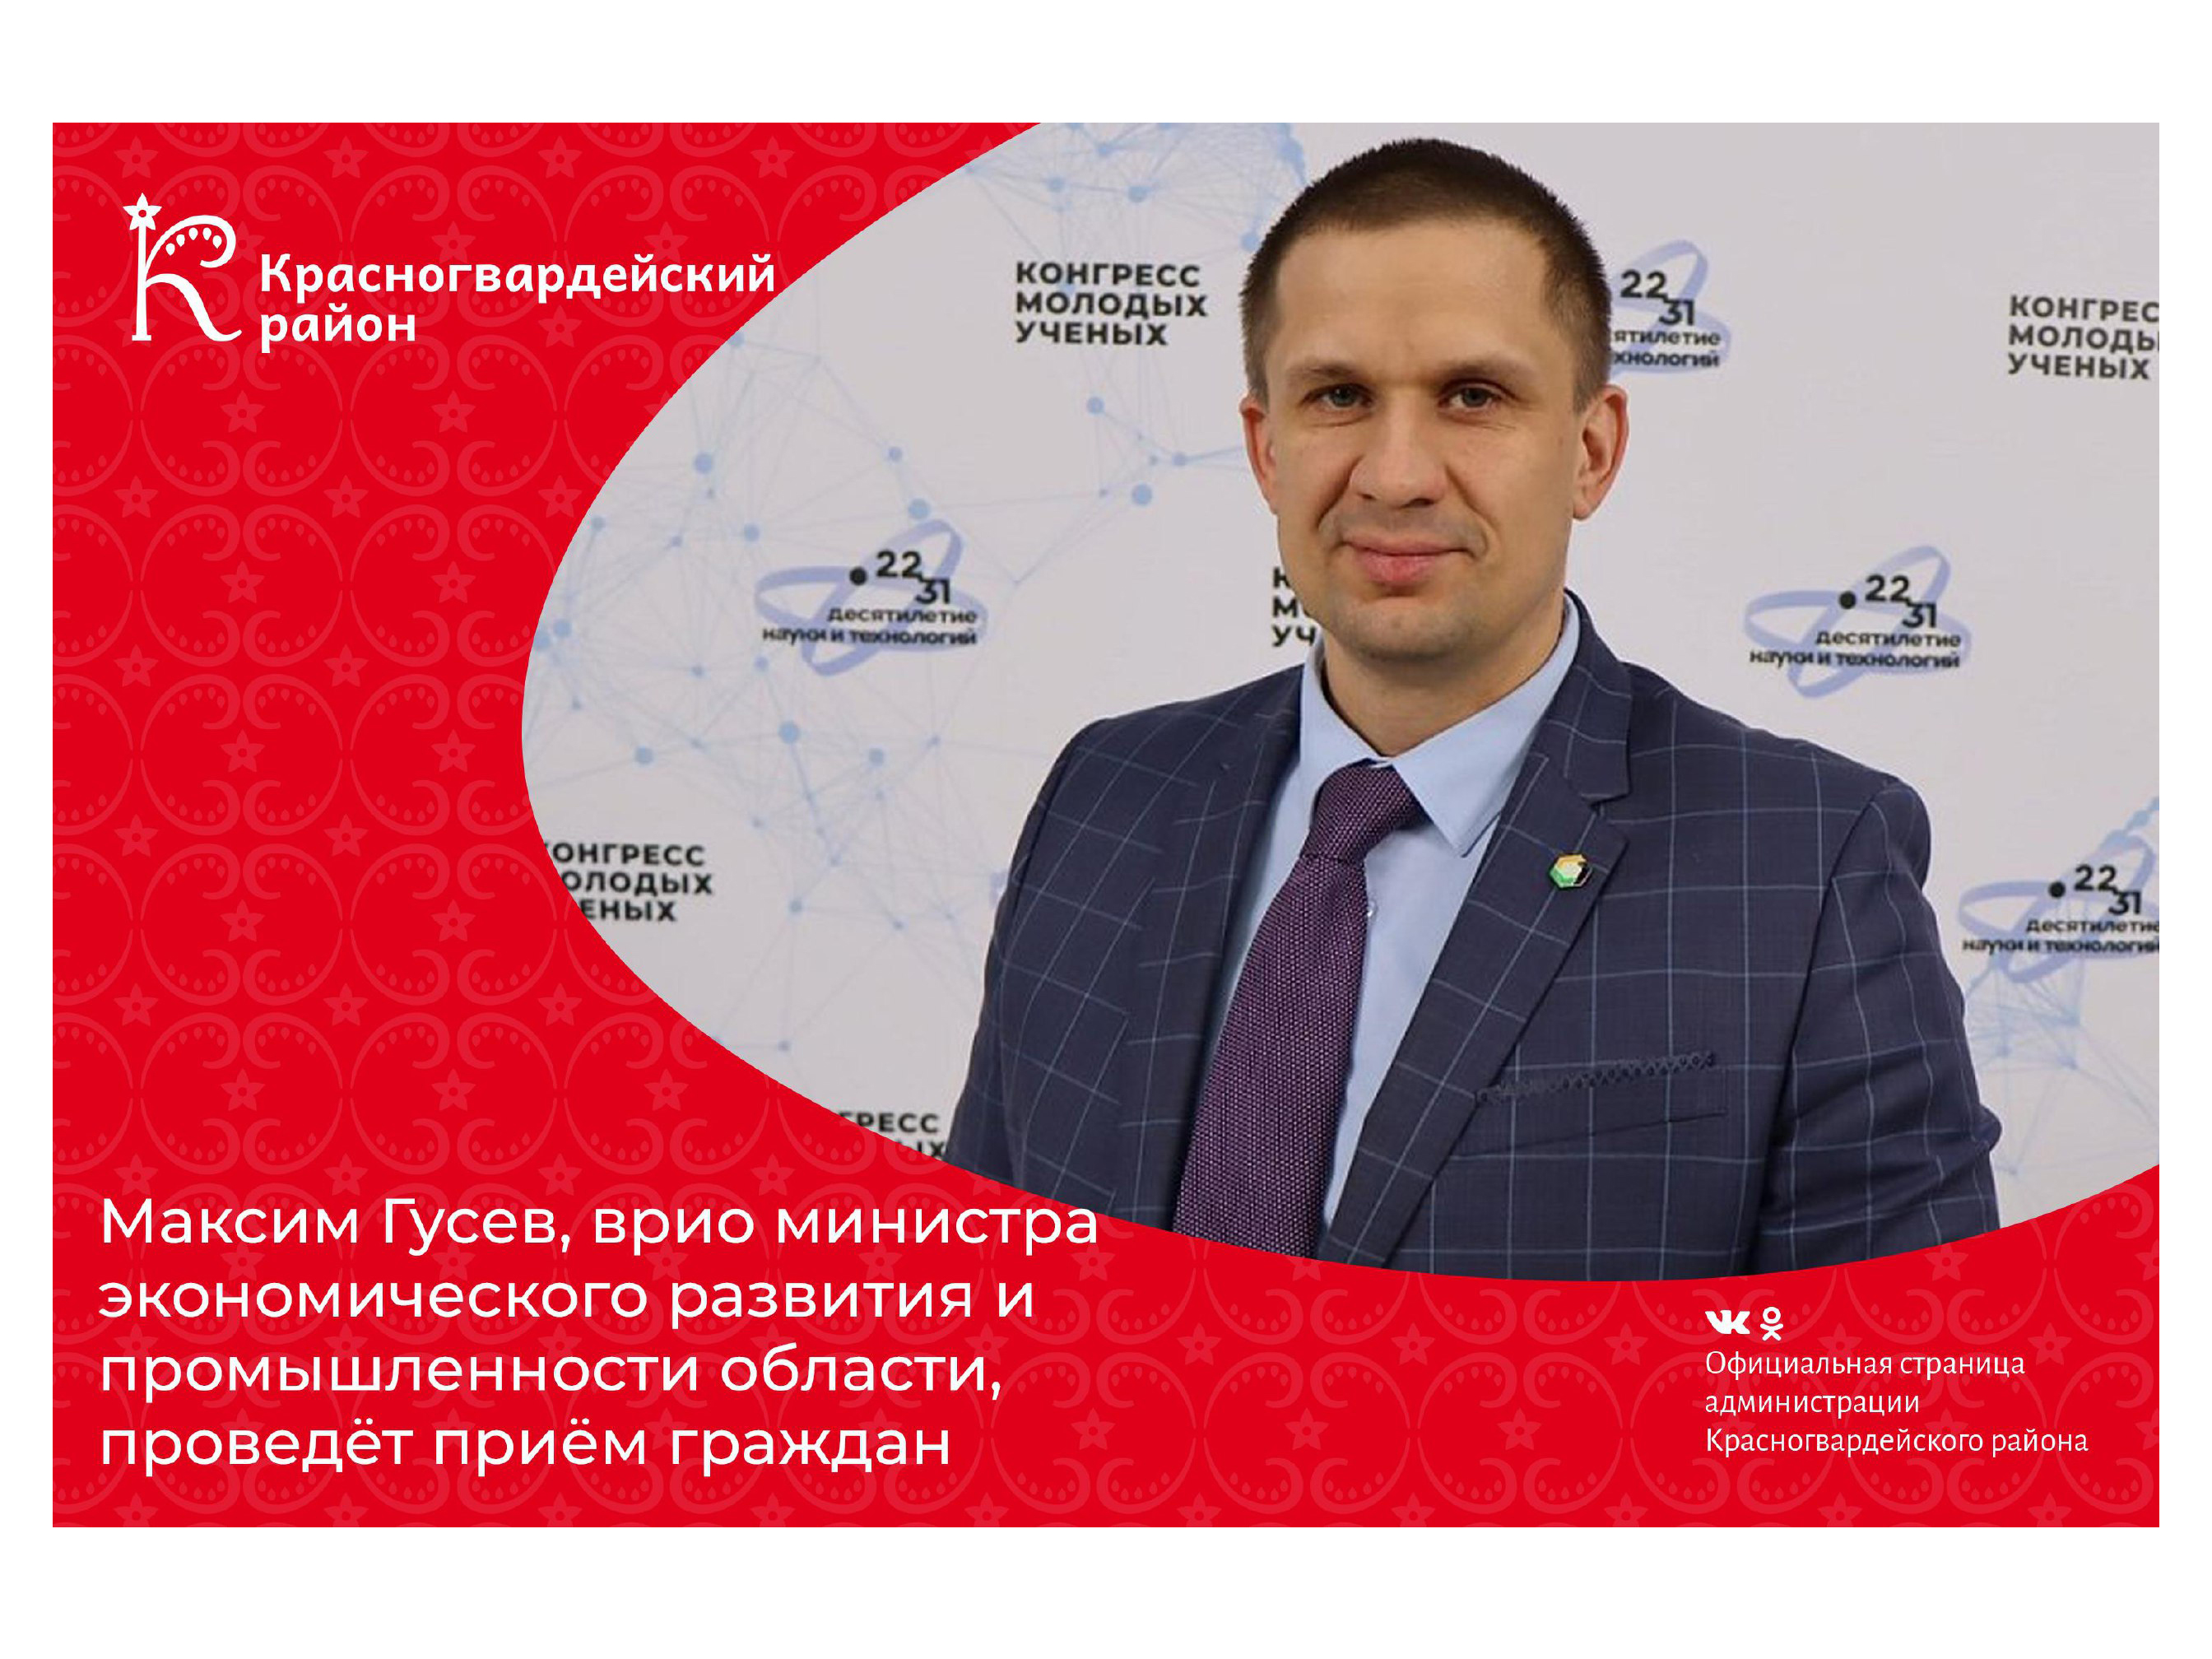 Максим Гусев, врио министра экономического развития и промышленности области, проведёт приём граждан.